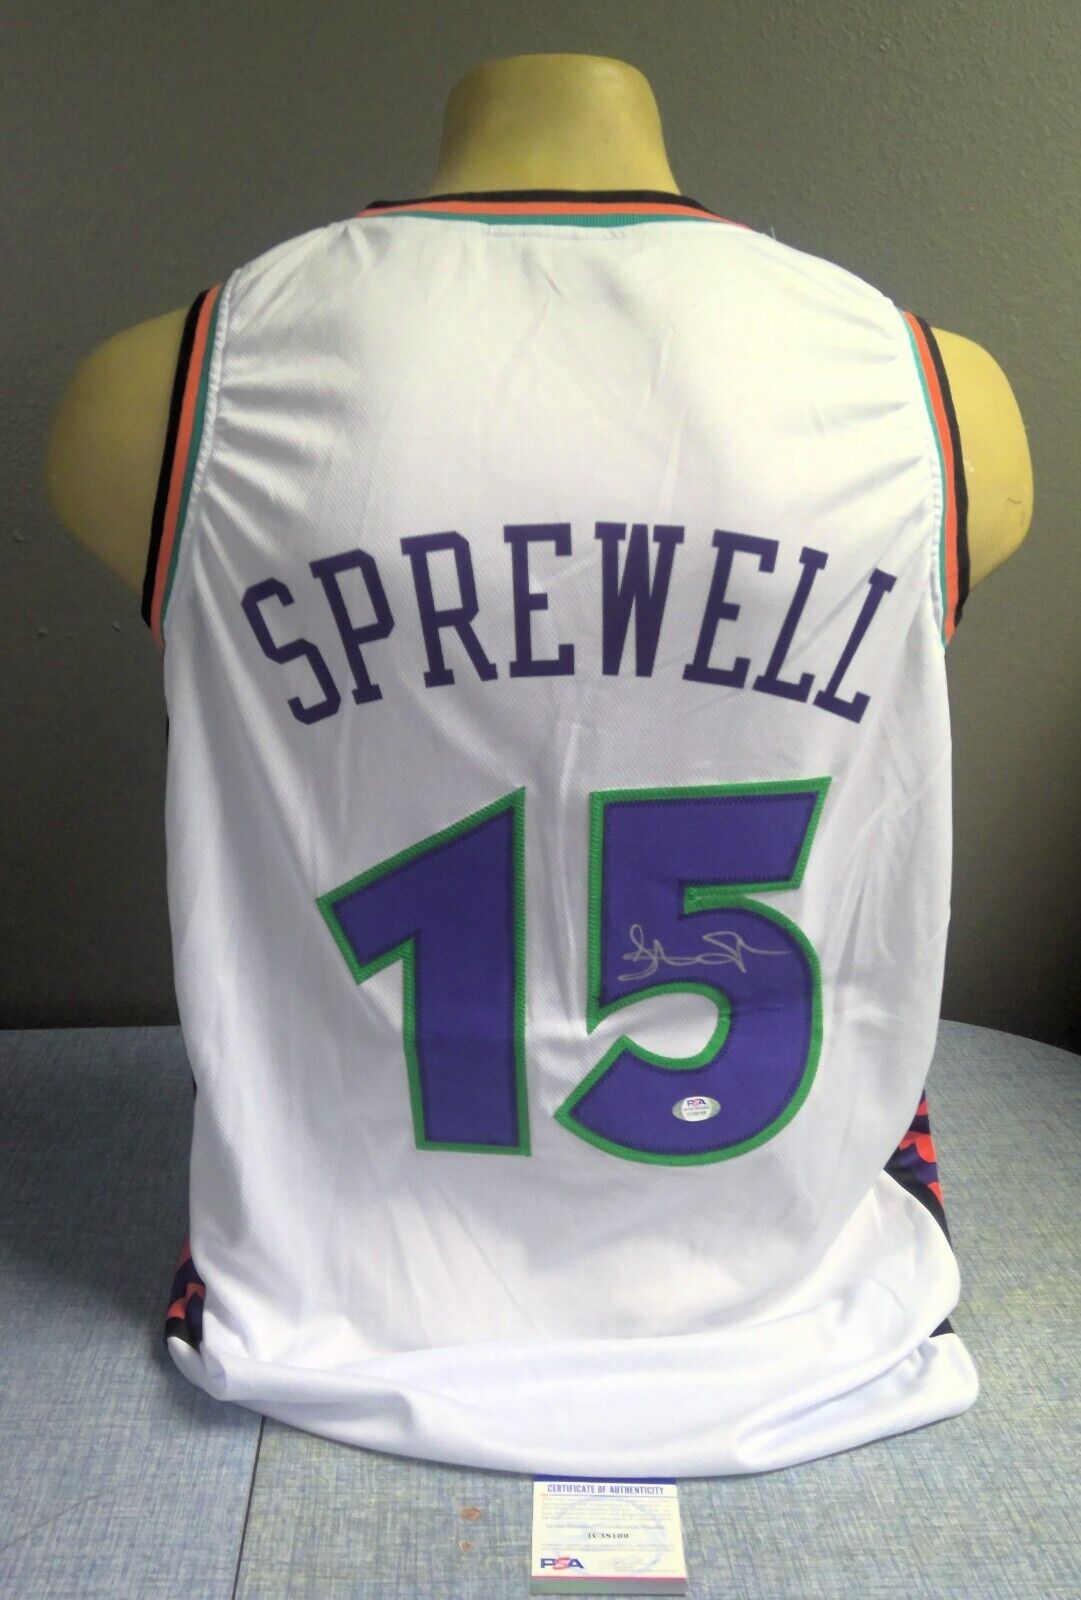 Latrell Sprewell All Star Signed Custom NBA Basketball Jersey Size XL PSA/DNA